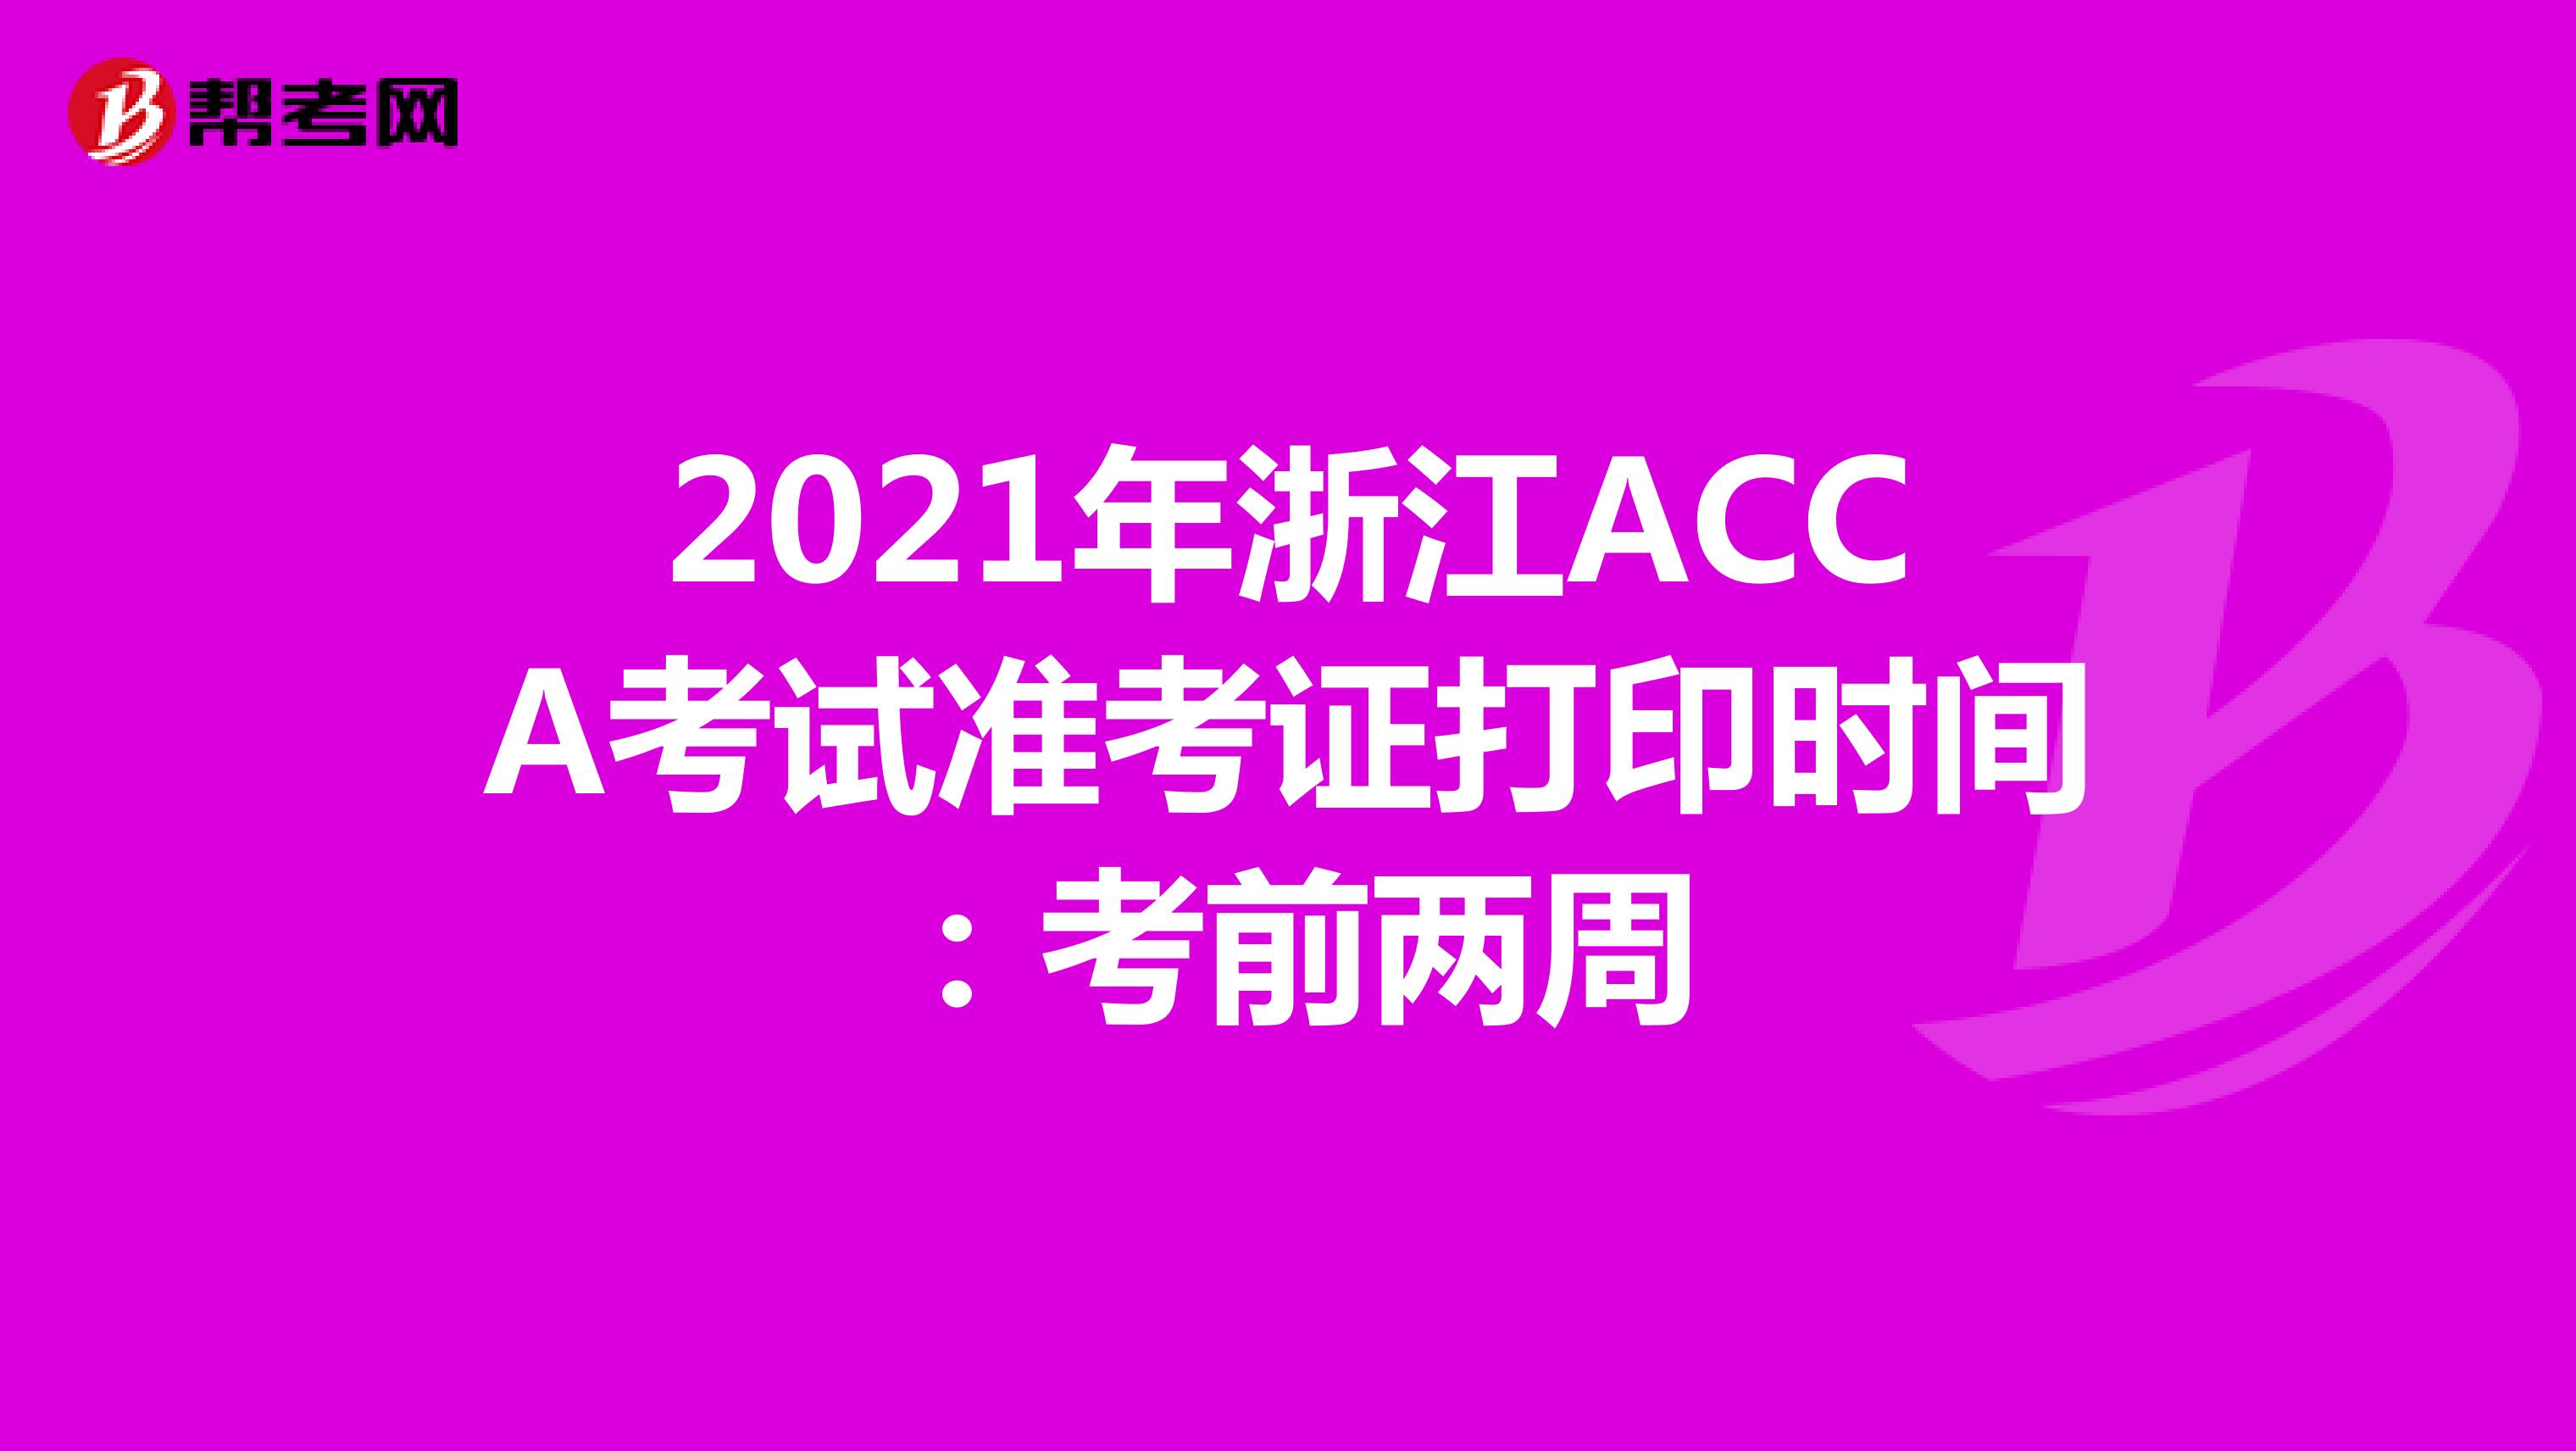 2021年浙江ACCA考试准考证打印时间：考前两周